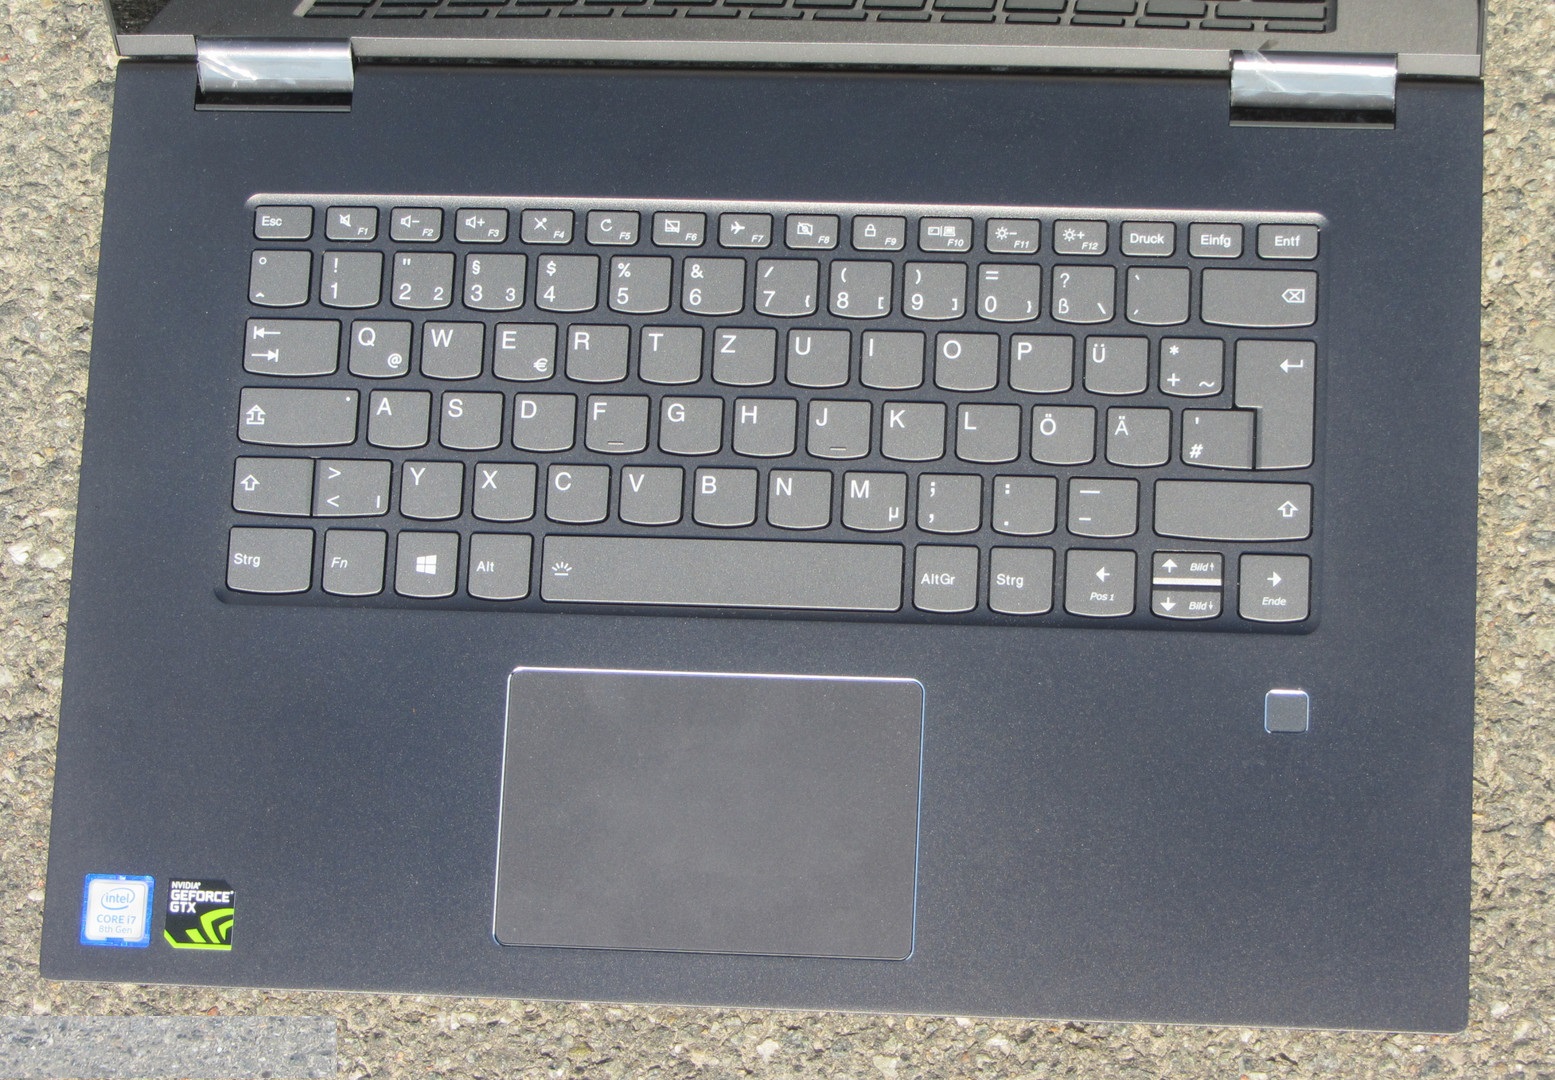 Đánh giá Lenovo Yoga 730-15IKB: Laptop 2 trong 1, cao cấp và mạnh mẽ, Chuyên trang tư vấn về Laptop